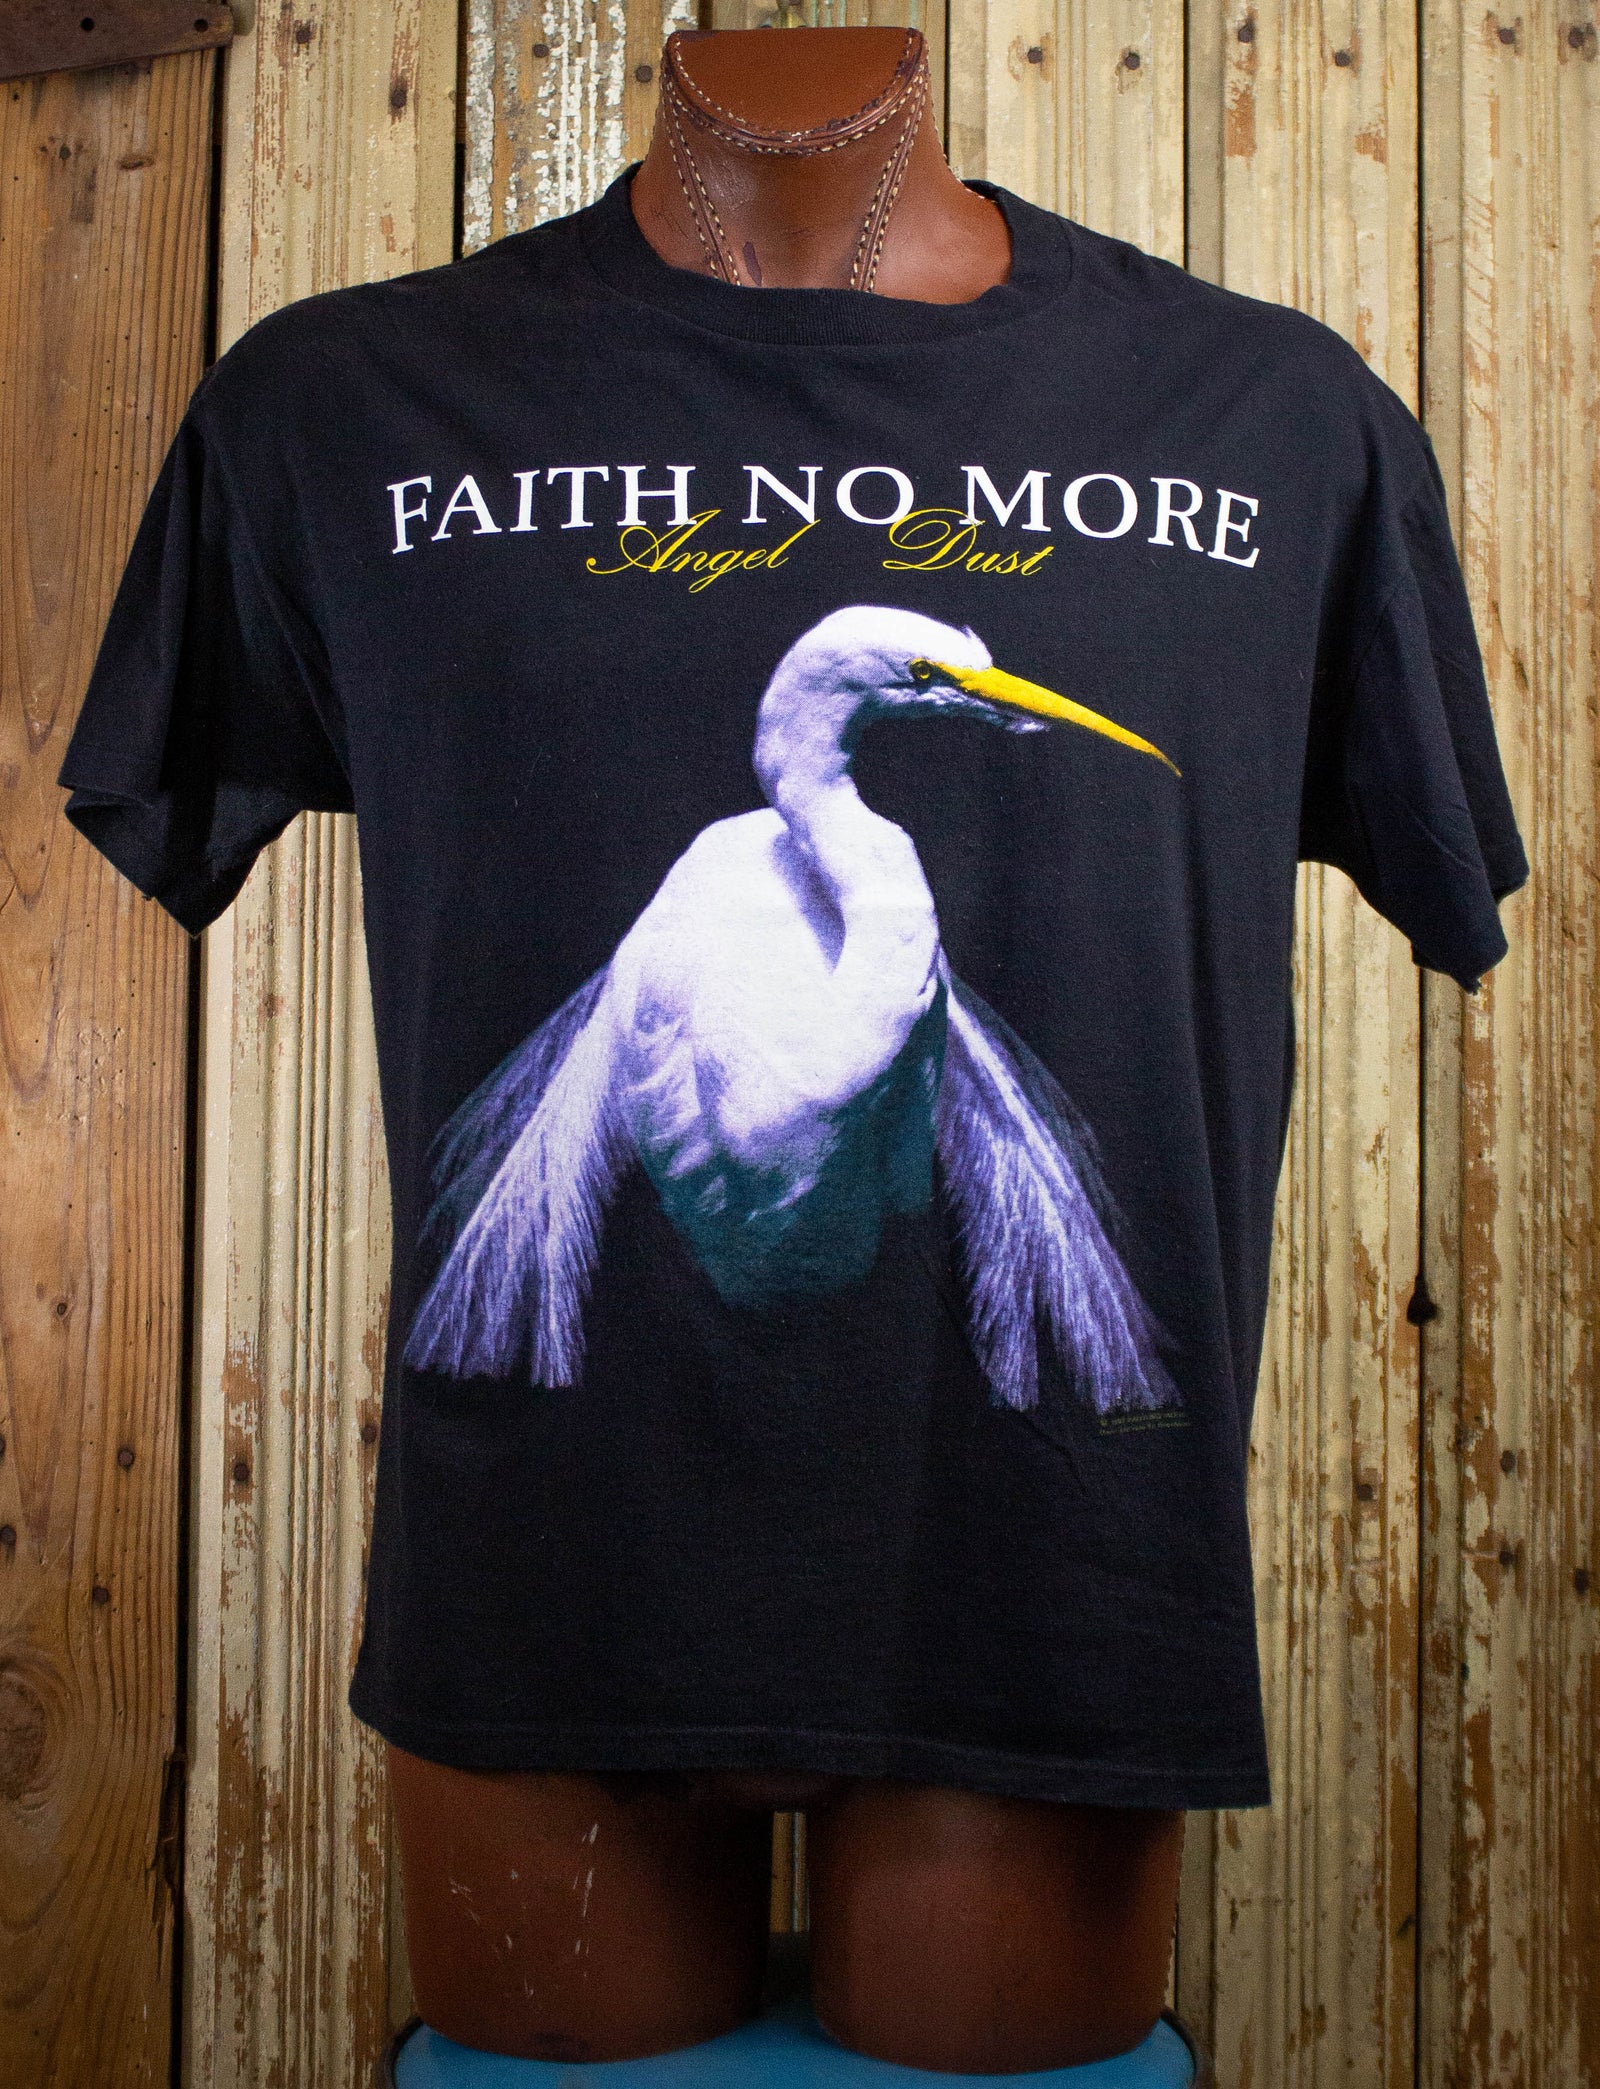 Vintage Faith More Angel Dust Concert T Shirt Black XL – Black Shag Vintage